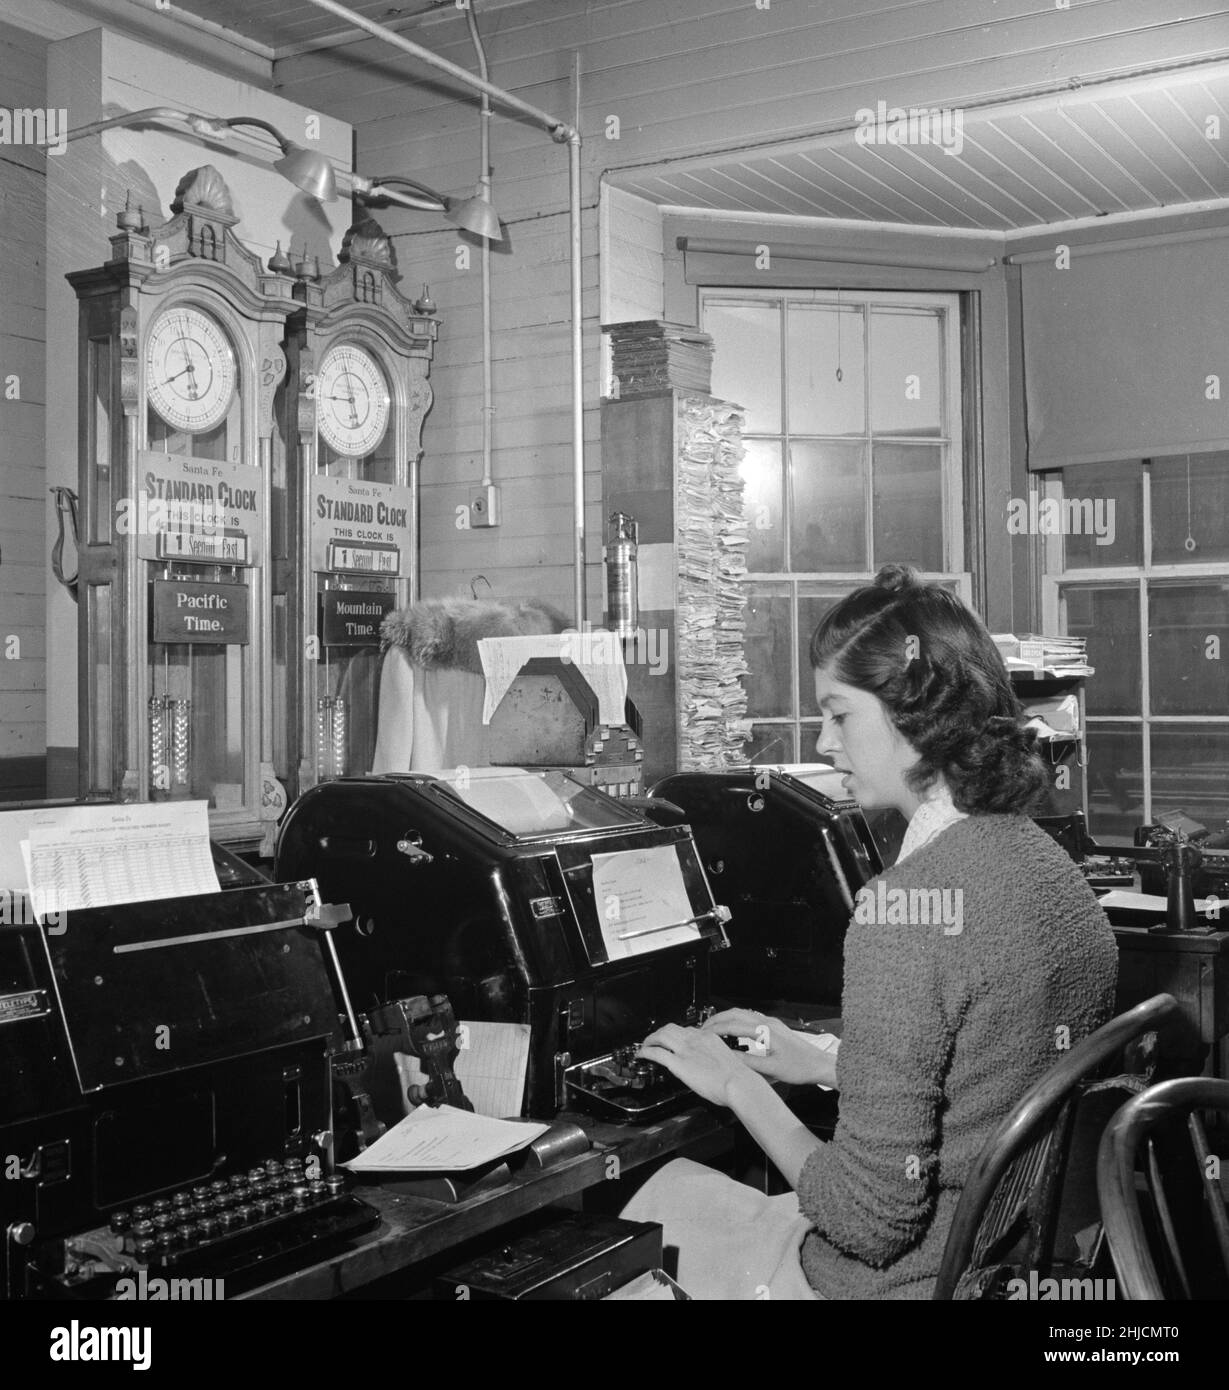 Operador de teletipo en la oficina de telégrafo de Atchison, Topeka y Santa Fe Railroad. El tiempo aquí cambia de la hora de la Montaña al Pacífico,. Fotografiado por Jack Delano, marzo de 1943. Seligman, Arizona. Foto de stock